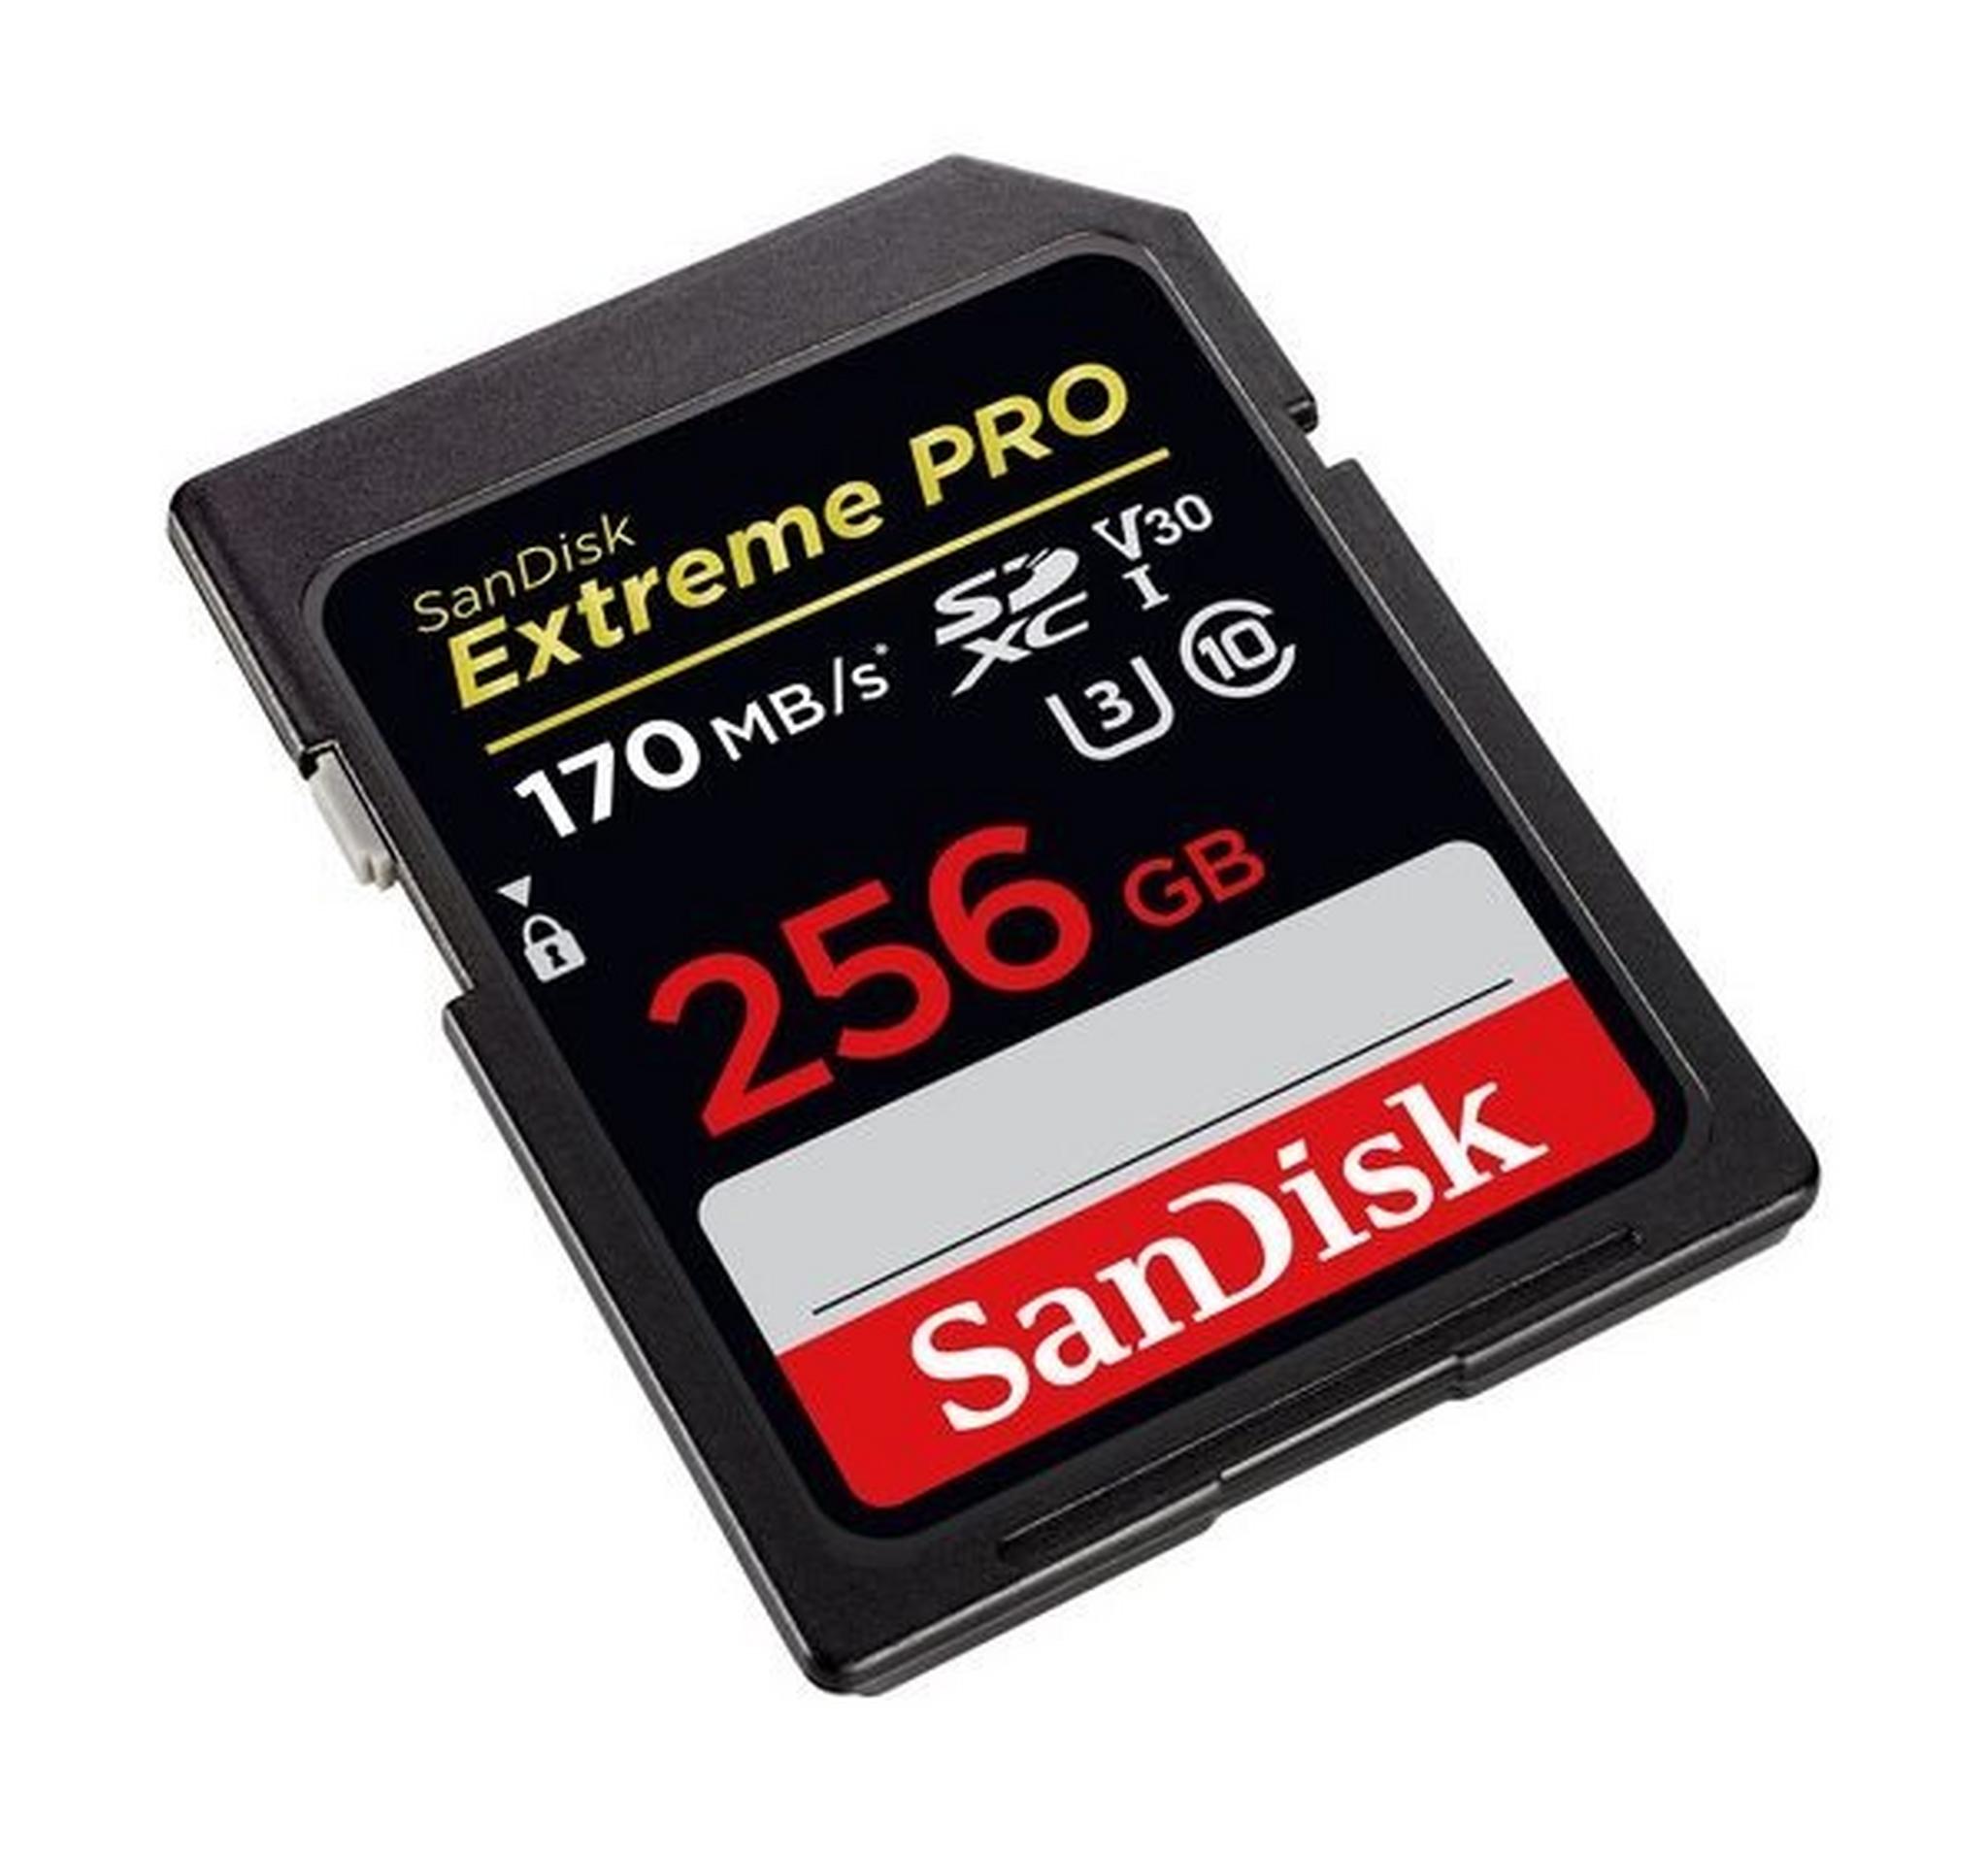 SanDisk Extreme PRO UHS-I SDXC Memory Card - 256GB